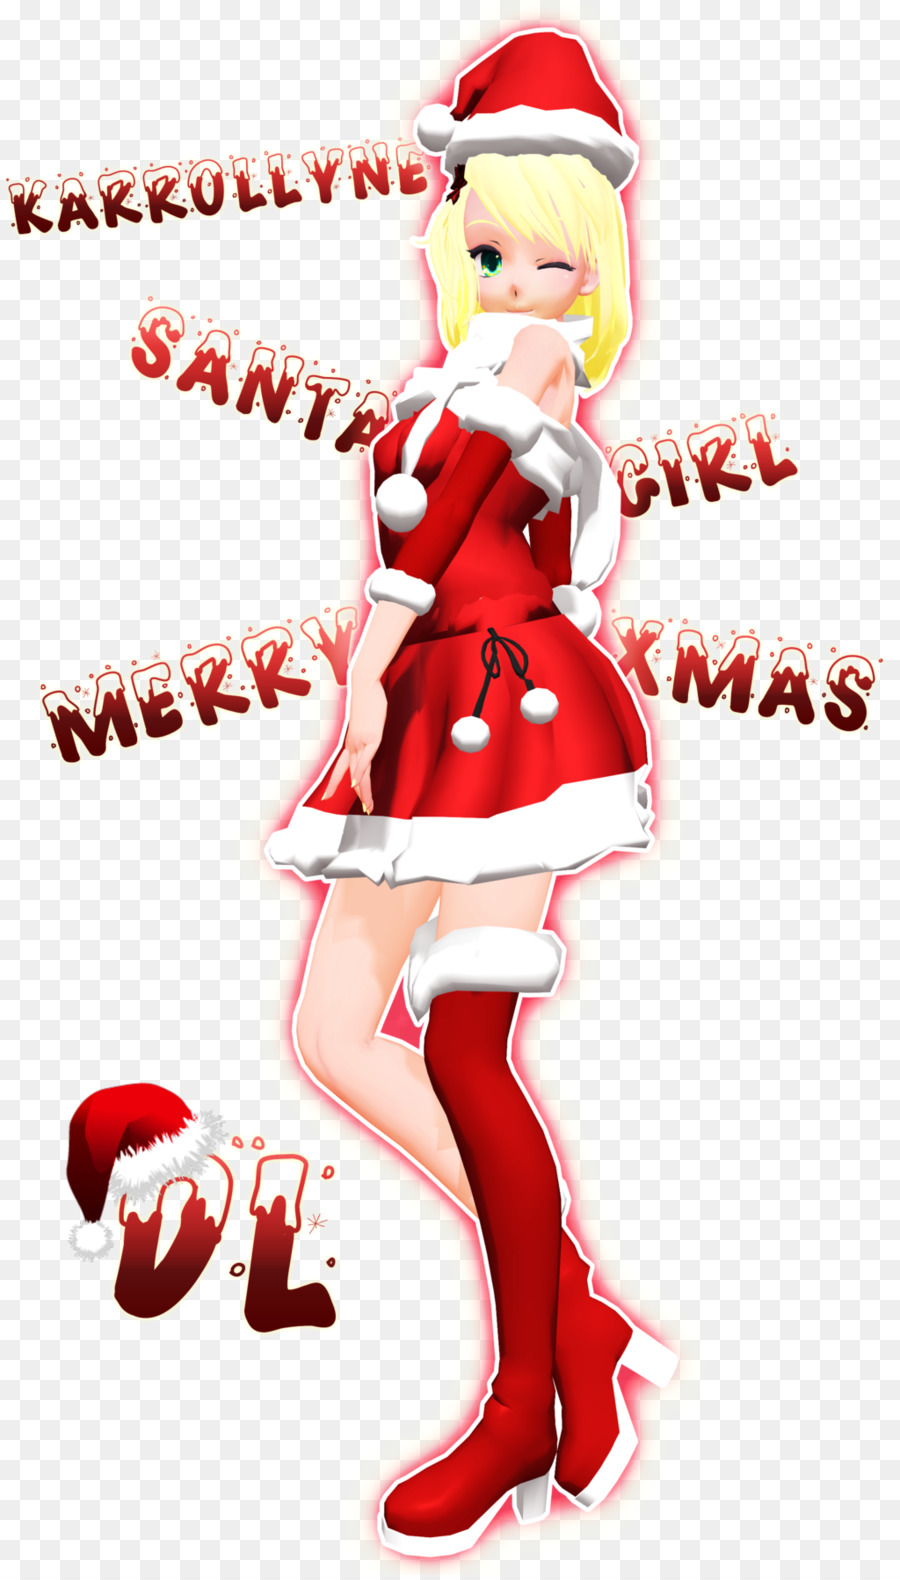 Santa Claus Christmas ornament Santa suit Weihnachts-elf Kostüm - Weihnachtsmann